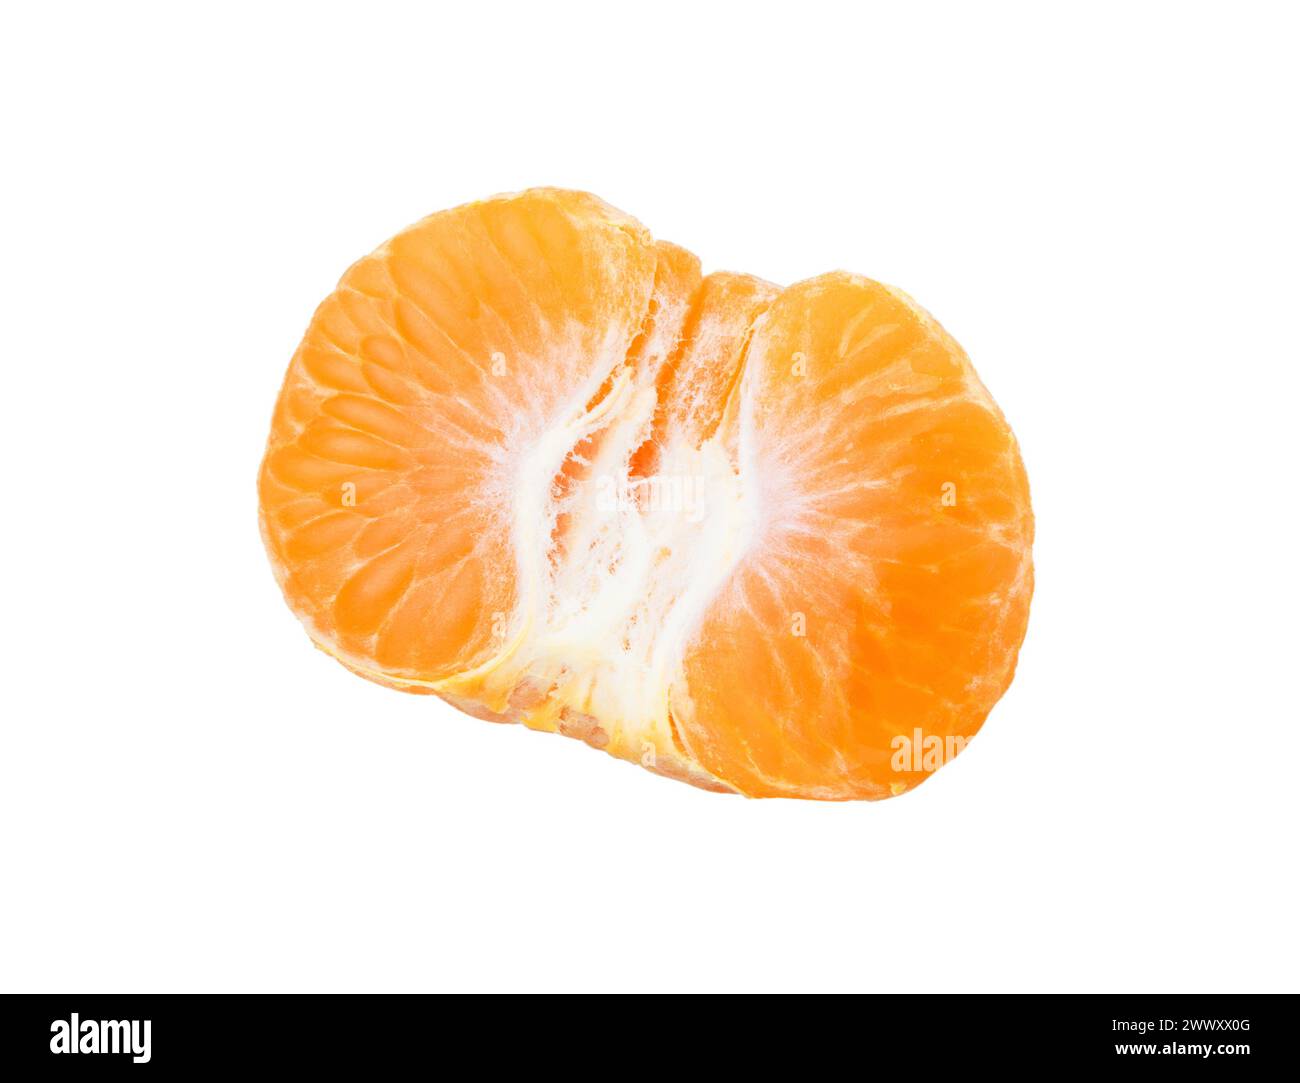 Tangerini o clementine isolate su sfondo bianco. Frutta d'arancia. Foto Stock